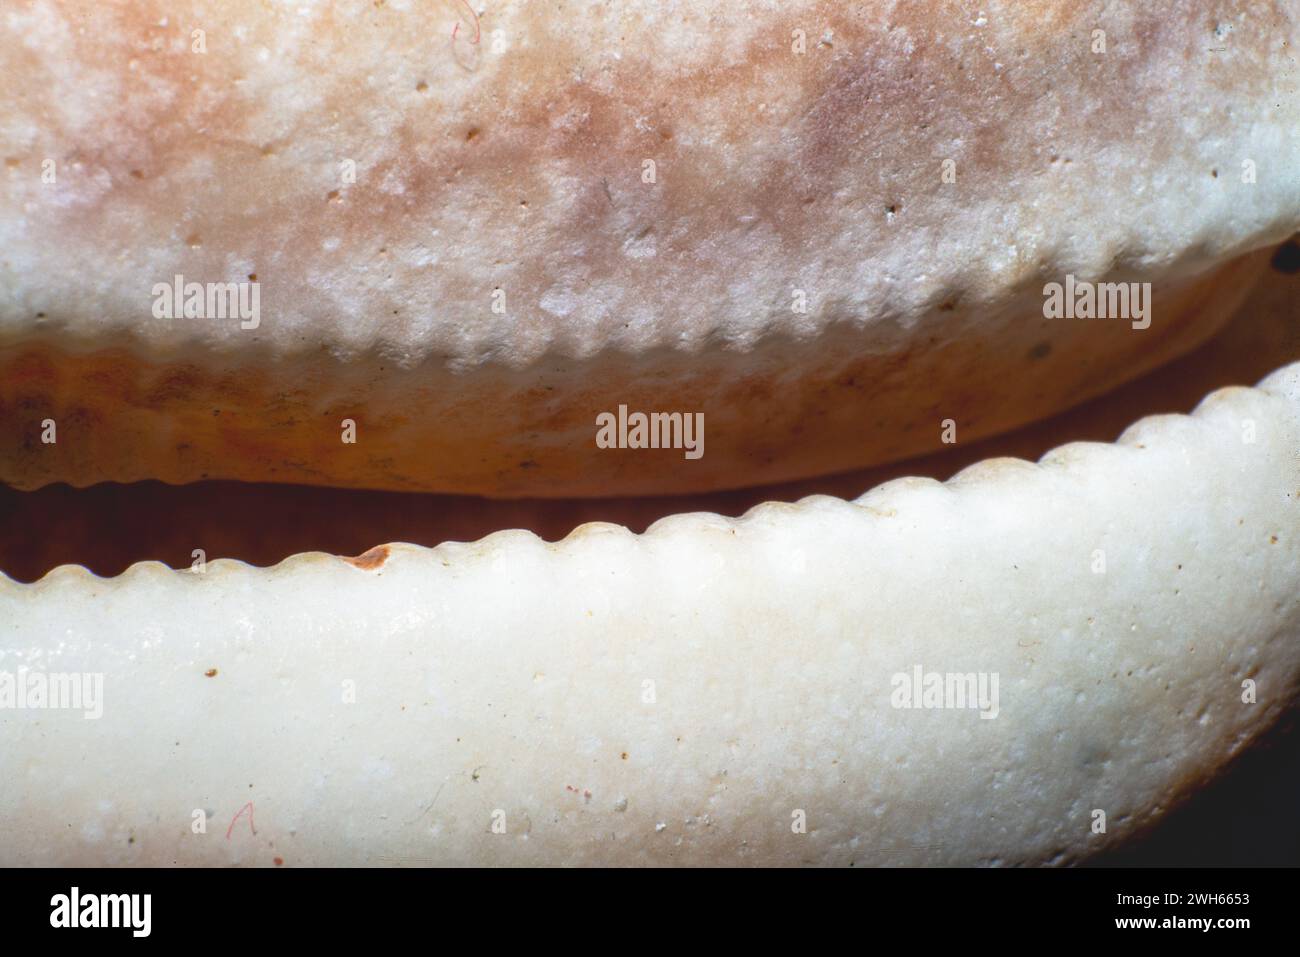 Une photo macro captivante mettant en évidence la pointe complexe d'un coquillage de l'espèce Chyprea, mettant en évidence sa beauté et ses motifs complexes. Banque D'Images